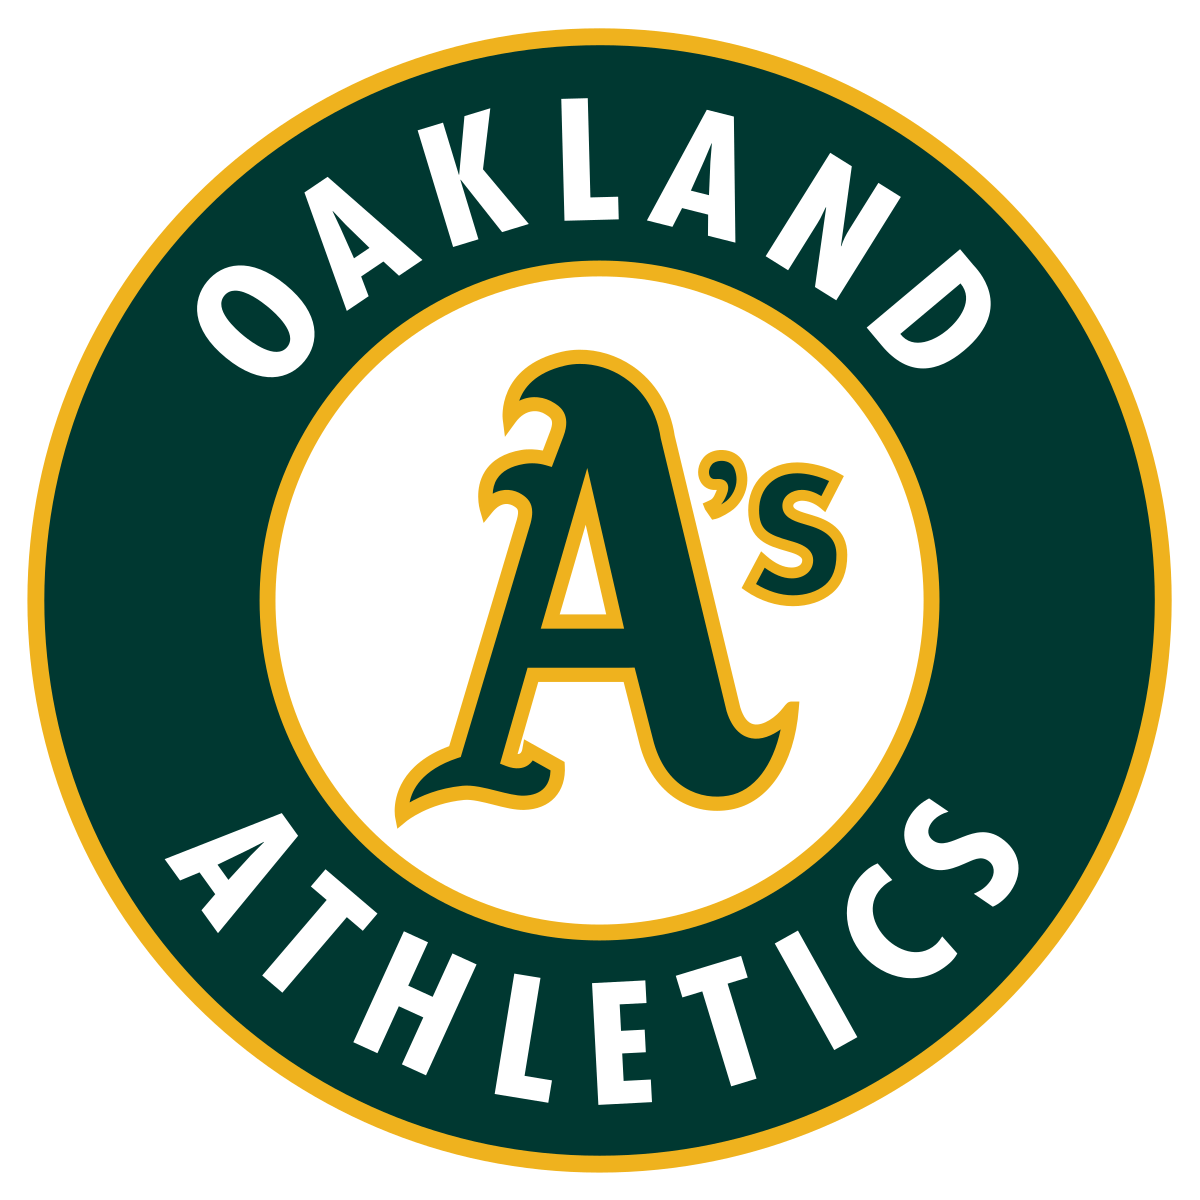 With a Blue Kangaroo Company Logo - Oakland Athletics